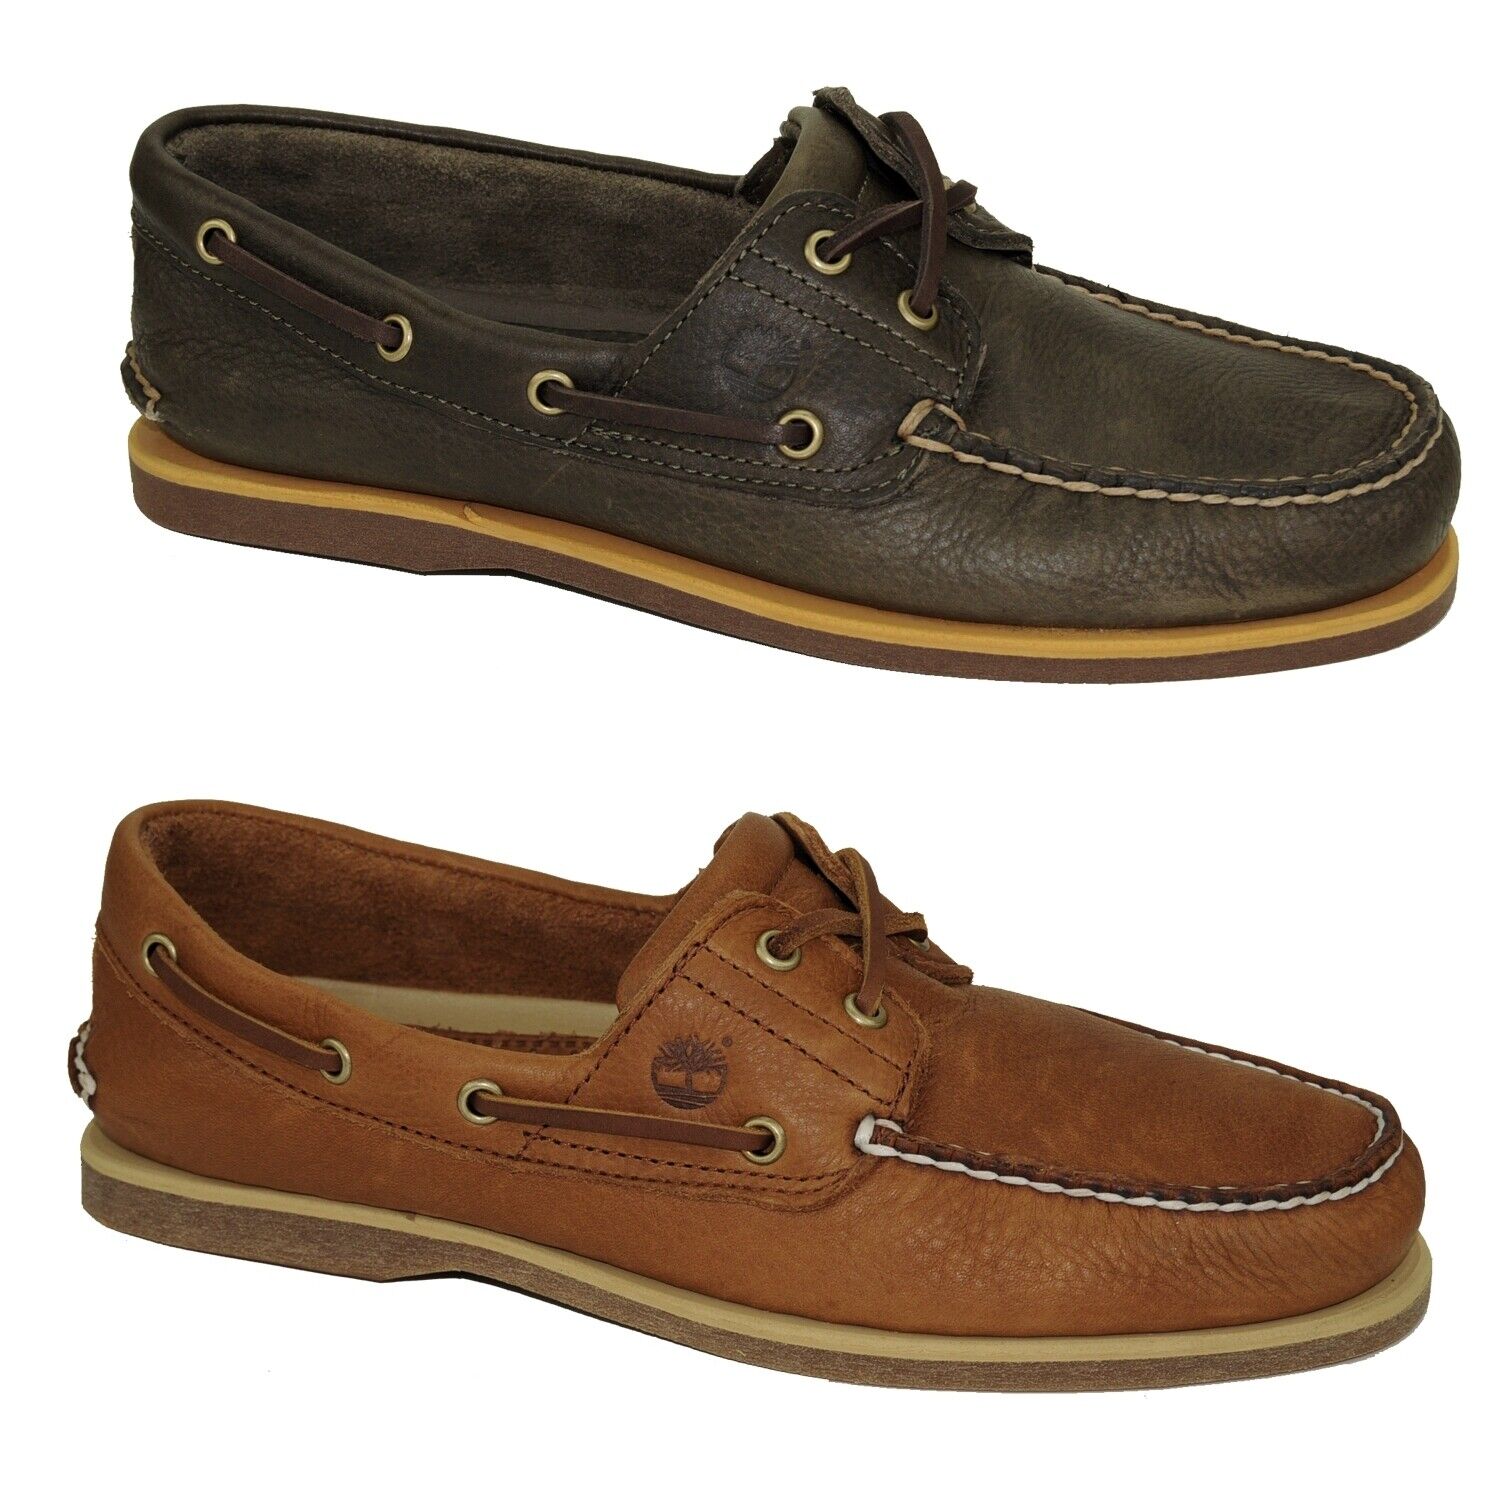 Timberland Classic Boat Shoes 2-Eye Deckschuhe Segelschuhe Herren Schuhe Modell- Farbe A2AFC - Olive Schuhgröße EUR 45,5 US 11,5